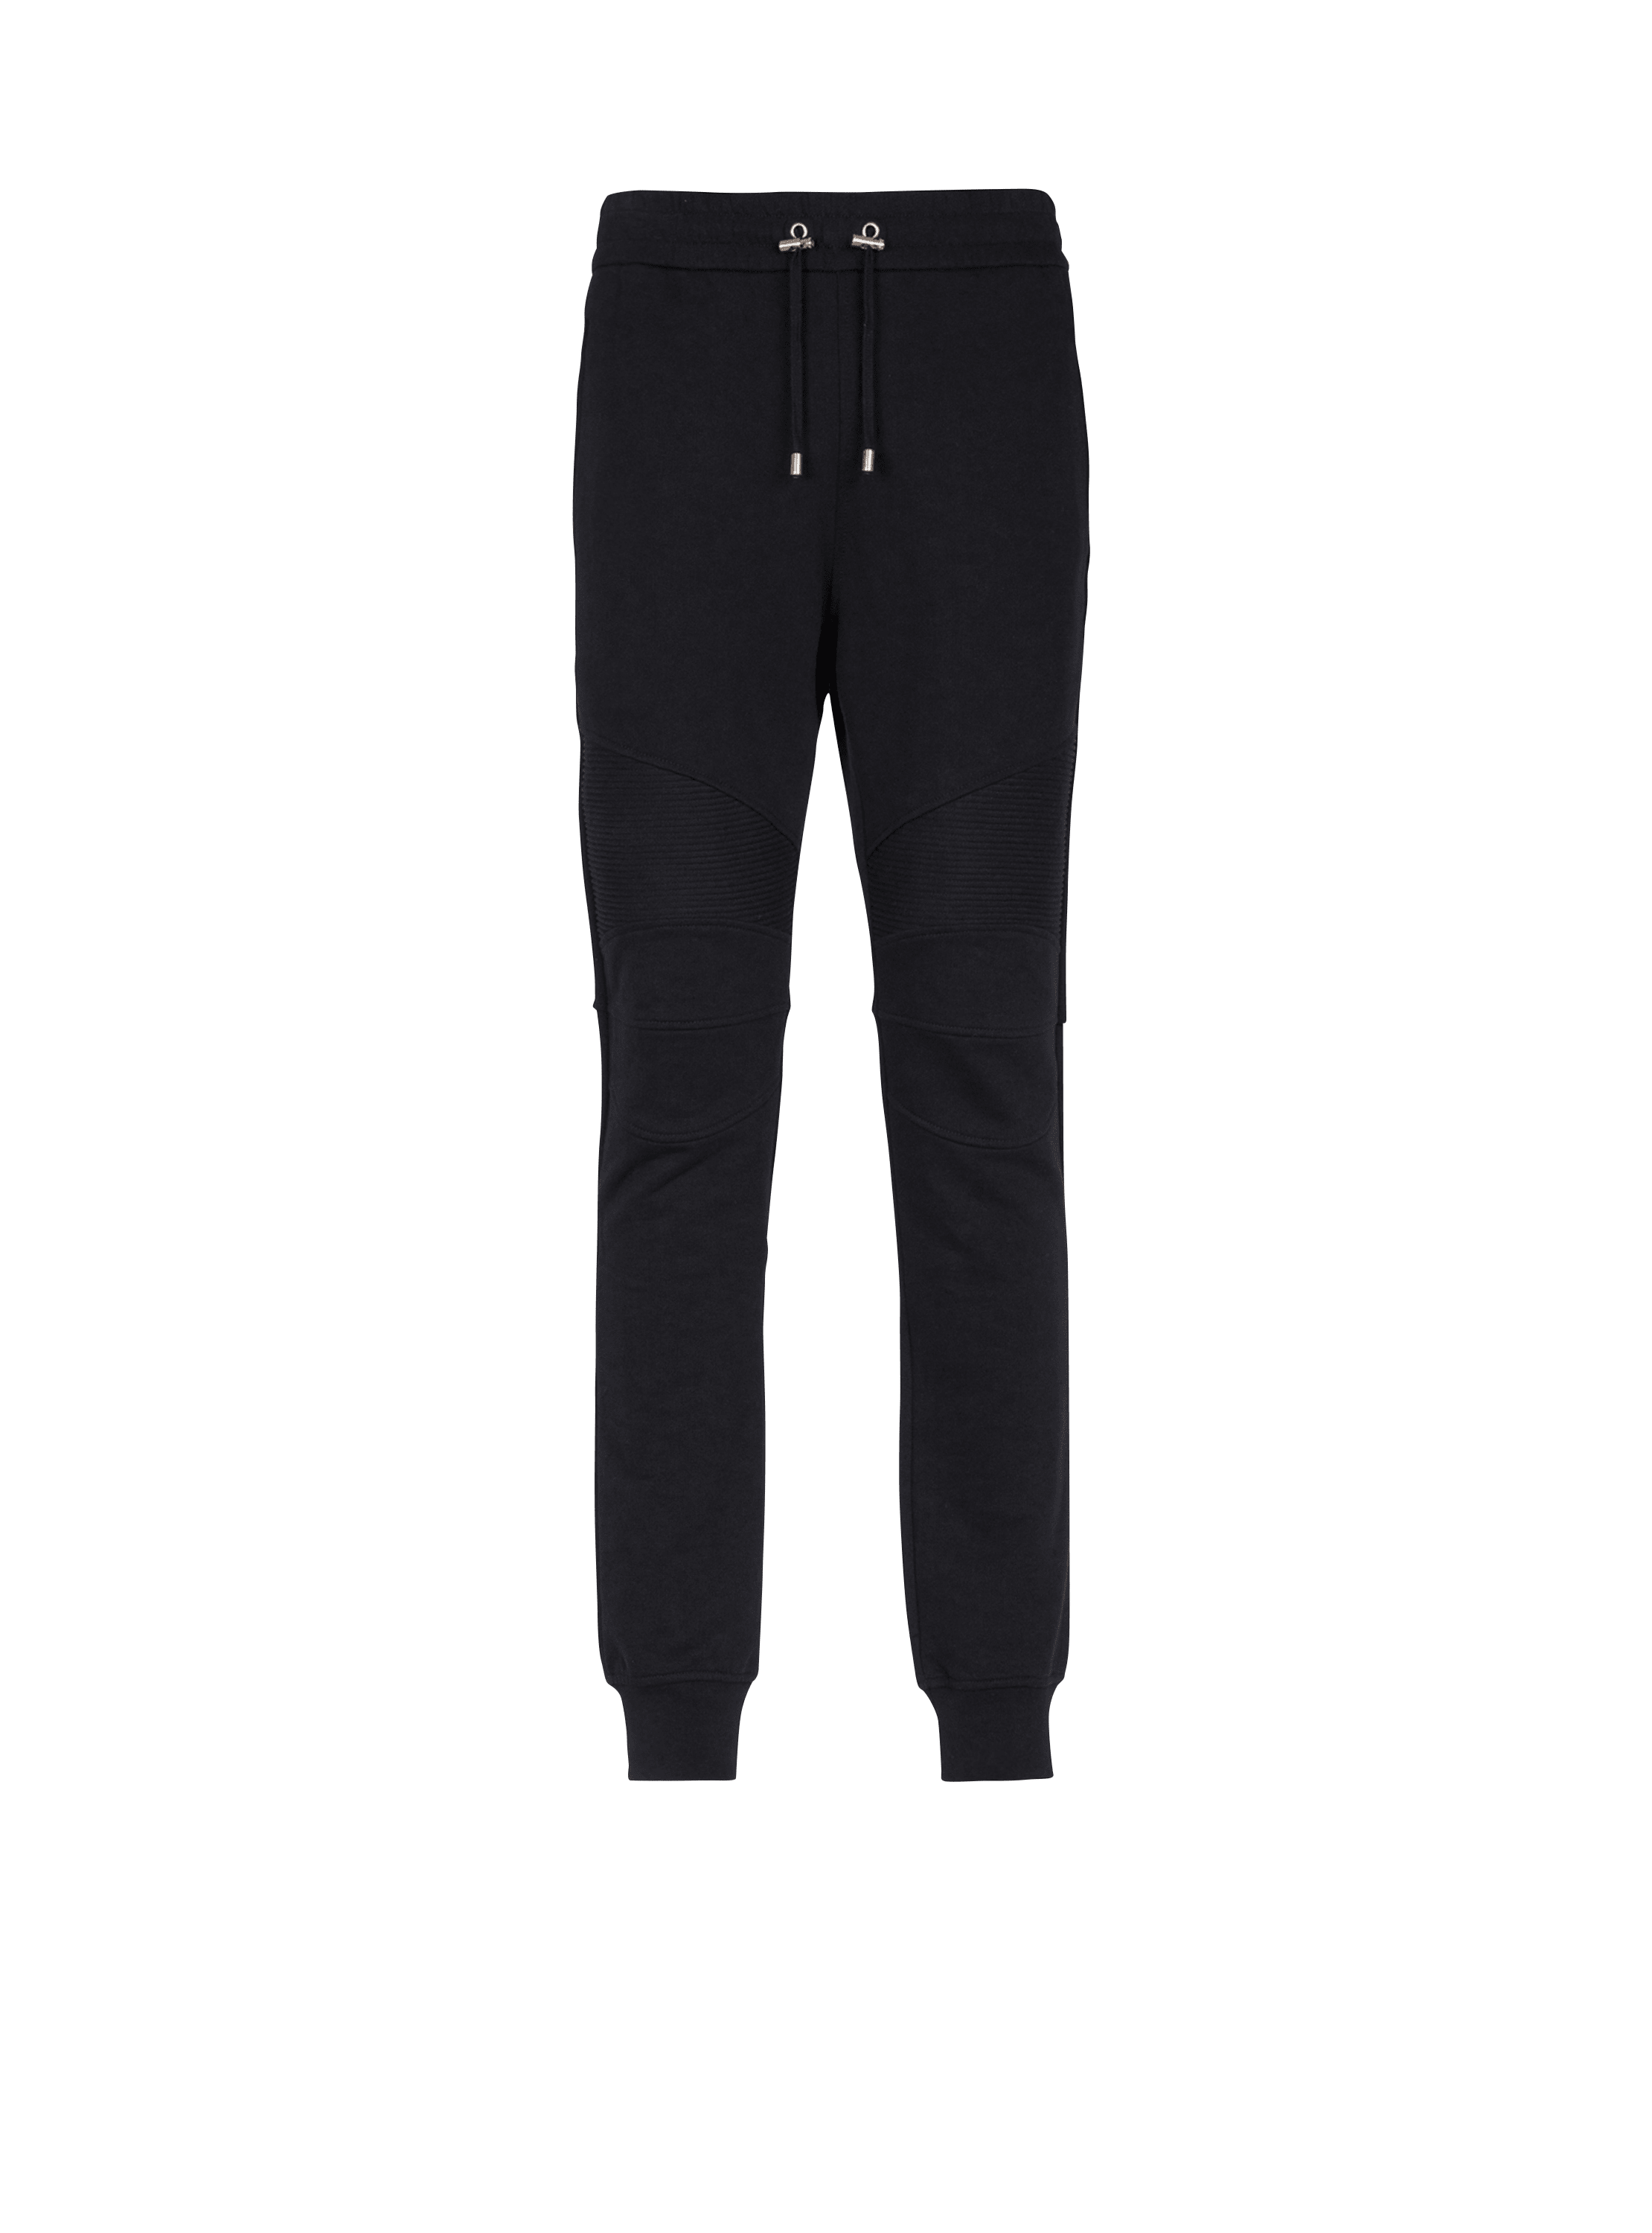 Pantalon de Jogging Femme Noir Coton Avec Poches –